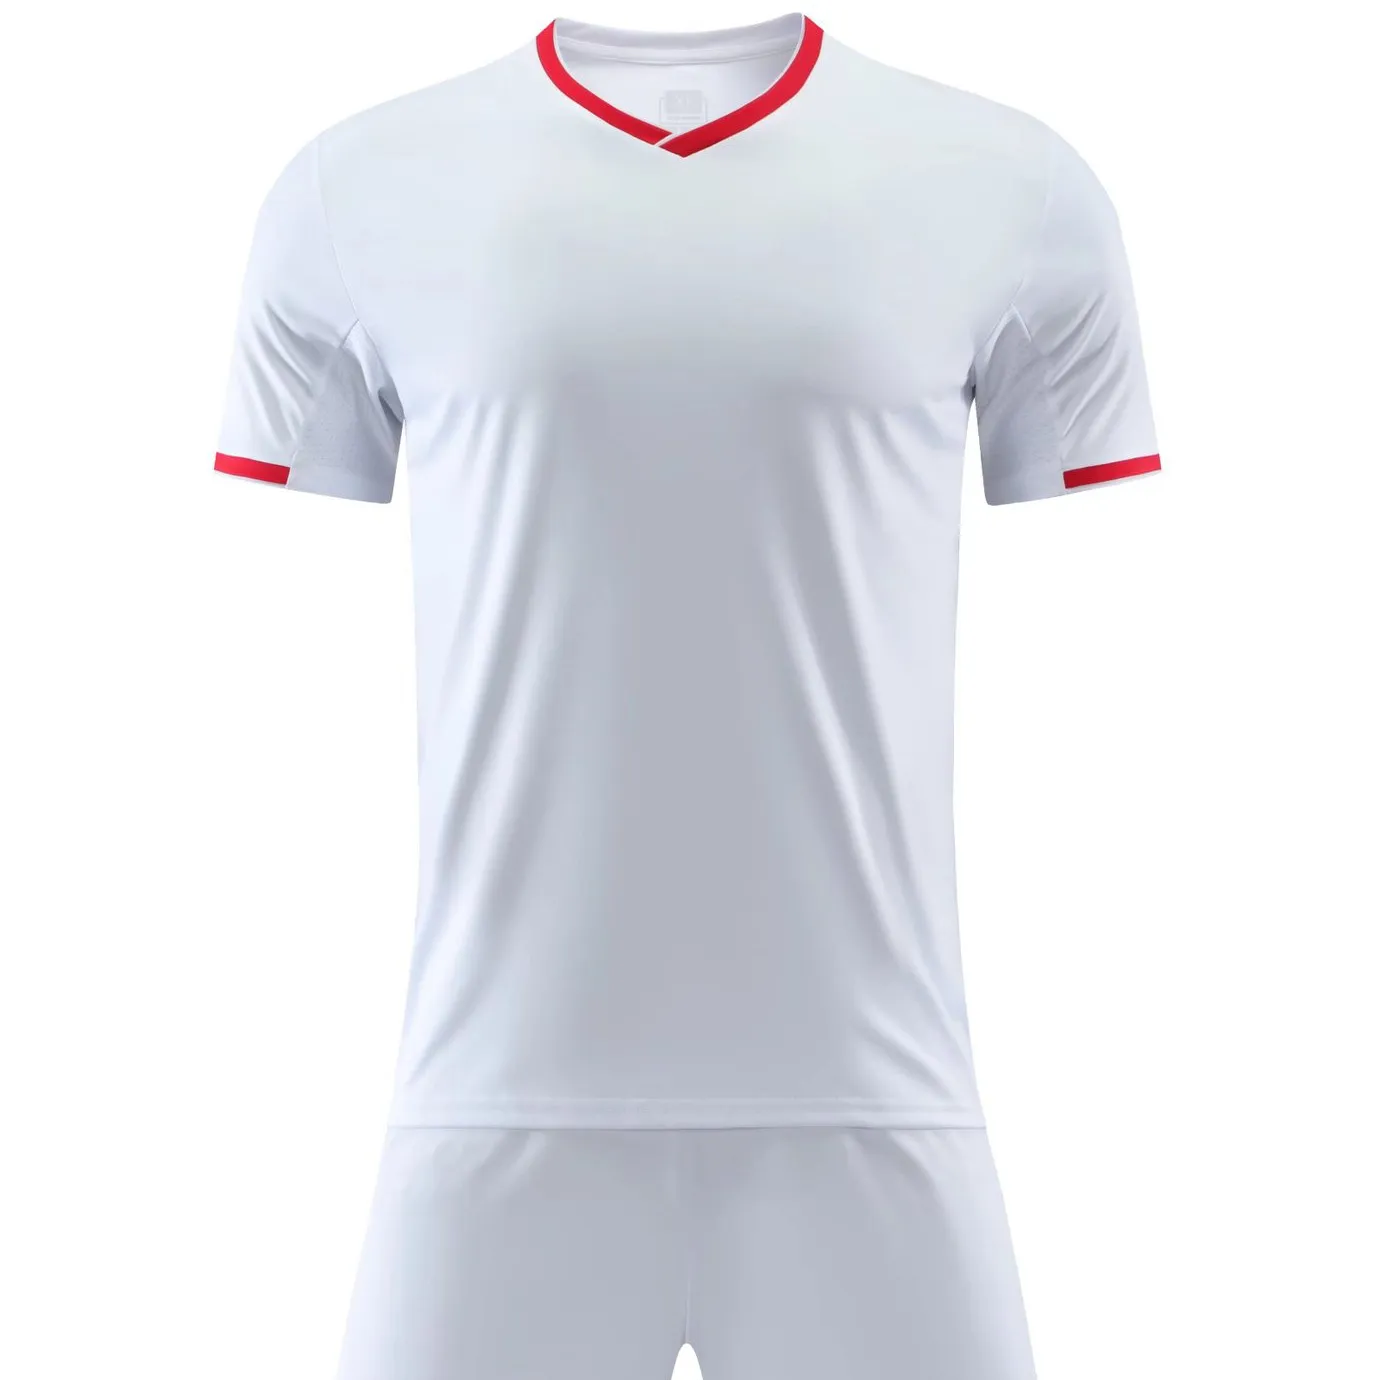 Kits de entrenamiento de equipo sublimado con logotipo personalizado, conjunto completo de camiseta, uniformes, camisetas de fútbol, venta al por mayor